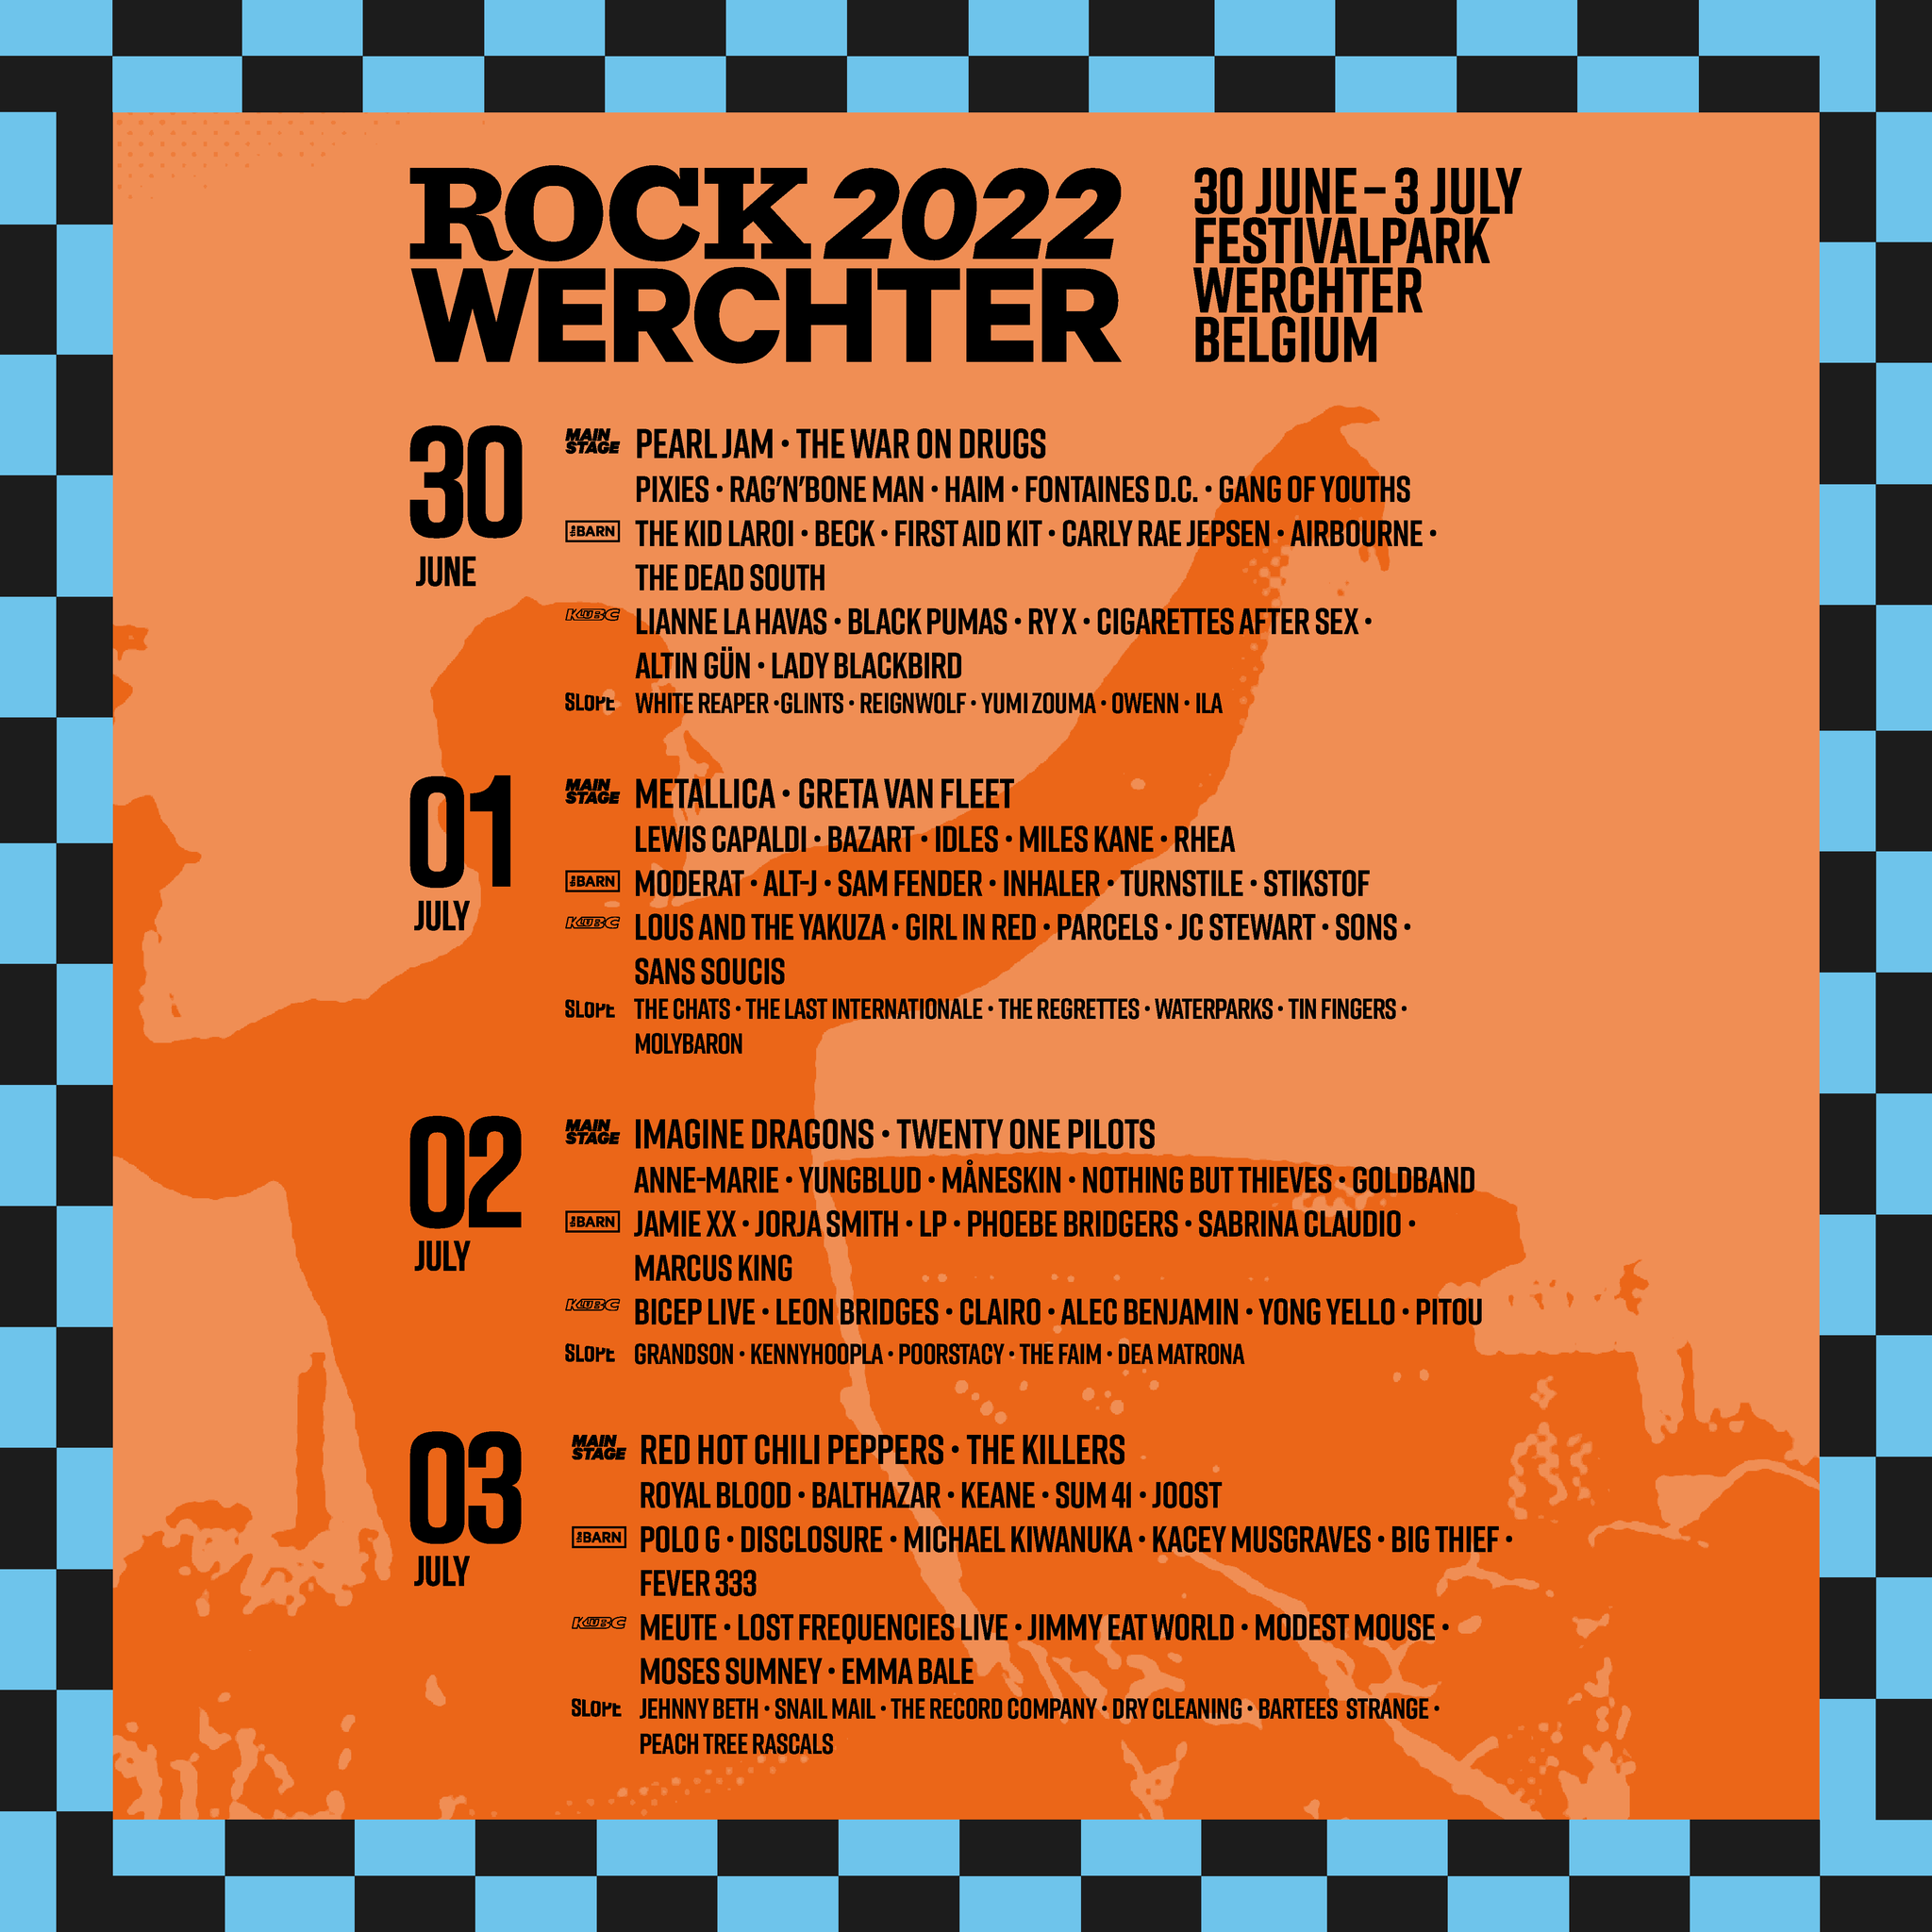 Rock Werchter 2022 at Werchter (Werchter) on 30 Jun 2022 | Last.fm